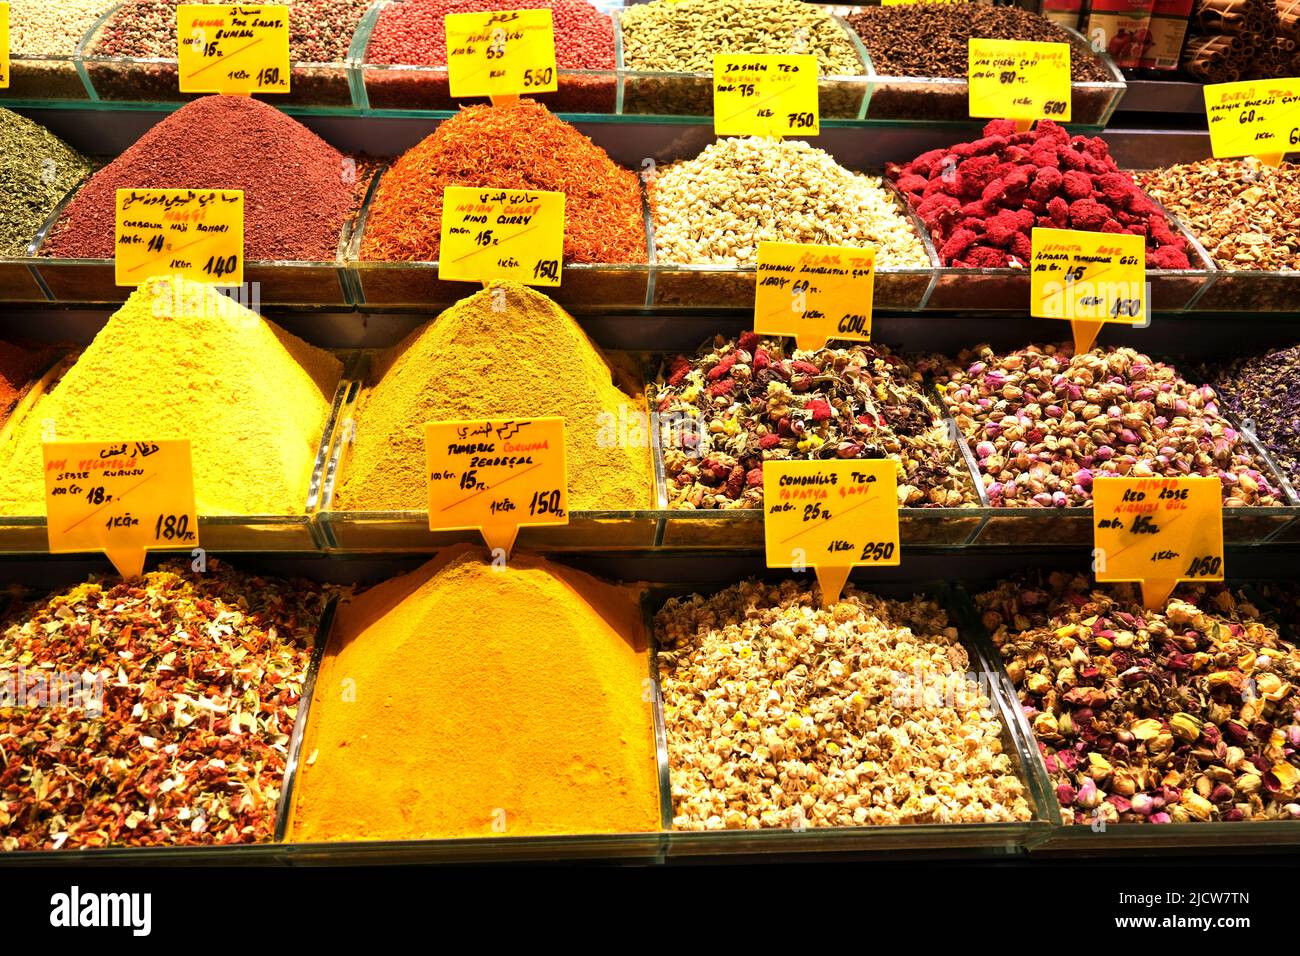 Eine Vielzahl von Gewürzen, Tees und Aromen werden im Spice Bazaar in Istanbul Türkei ausgestellt Stockfoto